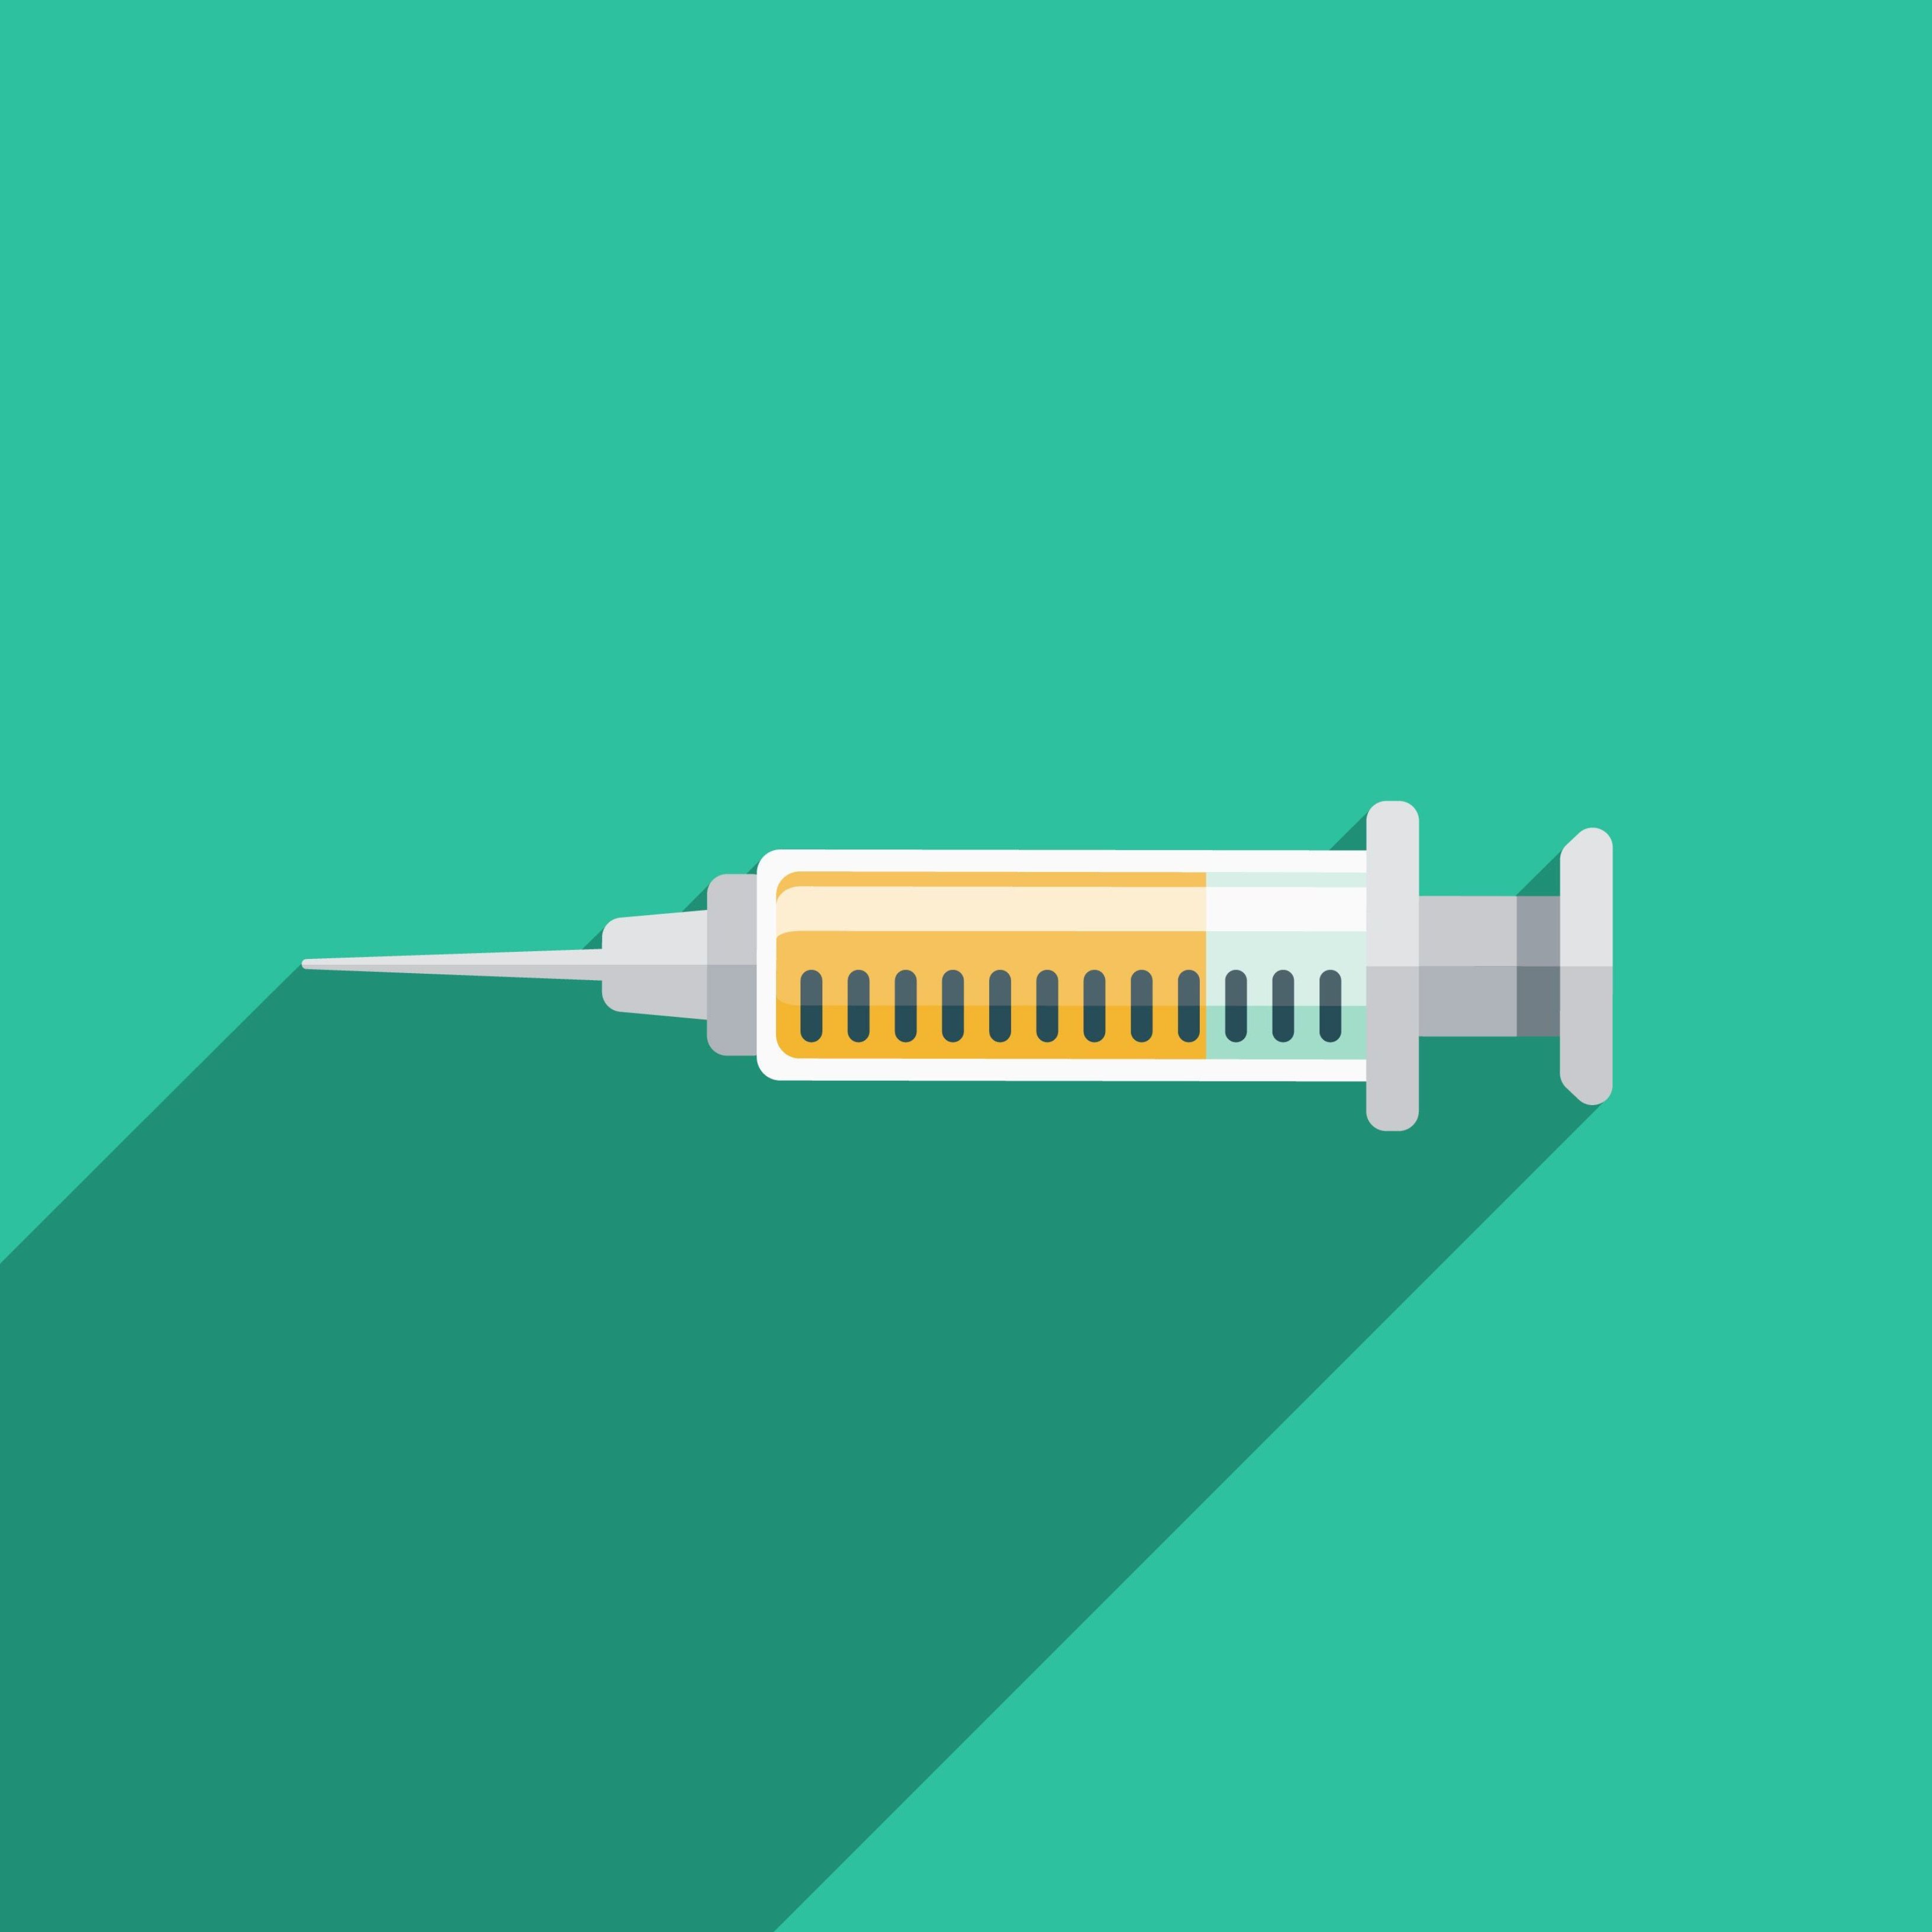 Una terapia experimental podría eliminar la insulina para la diabetes tipo 2